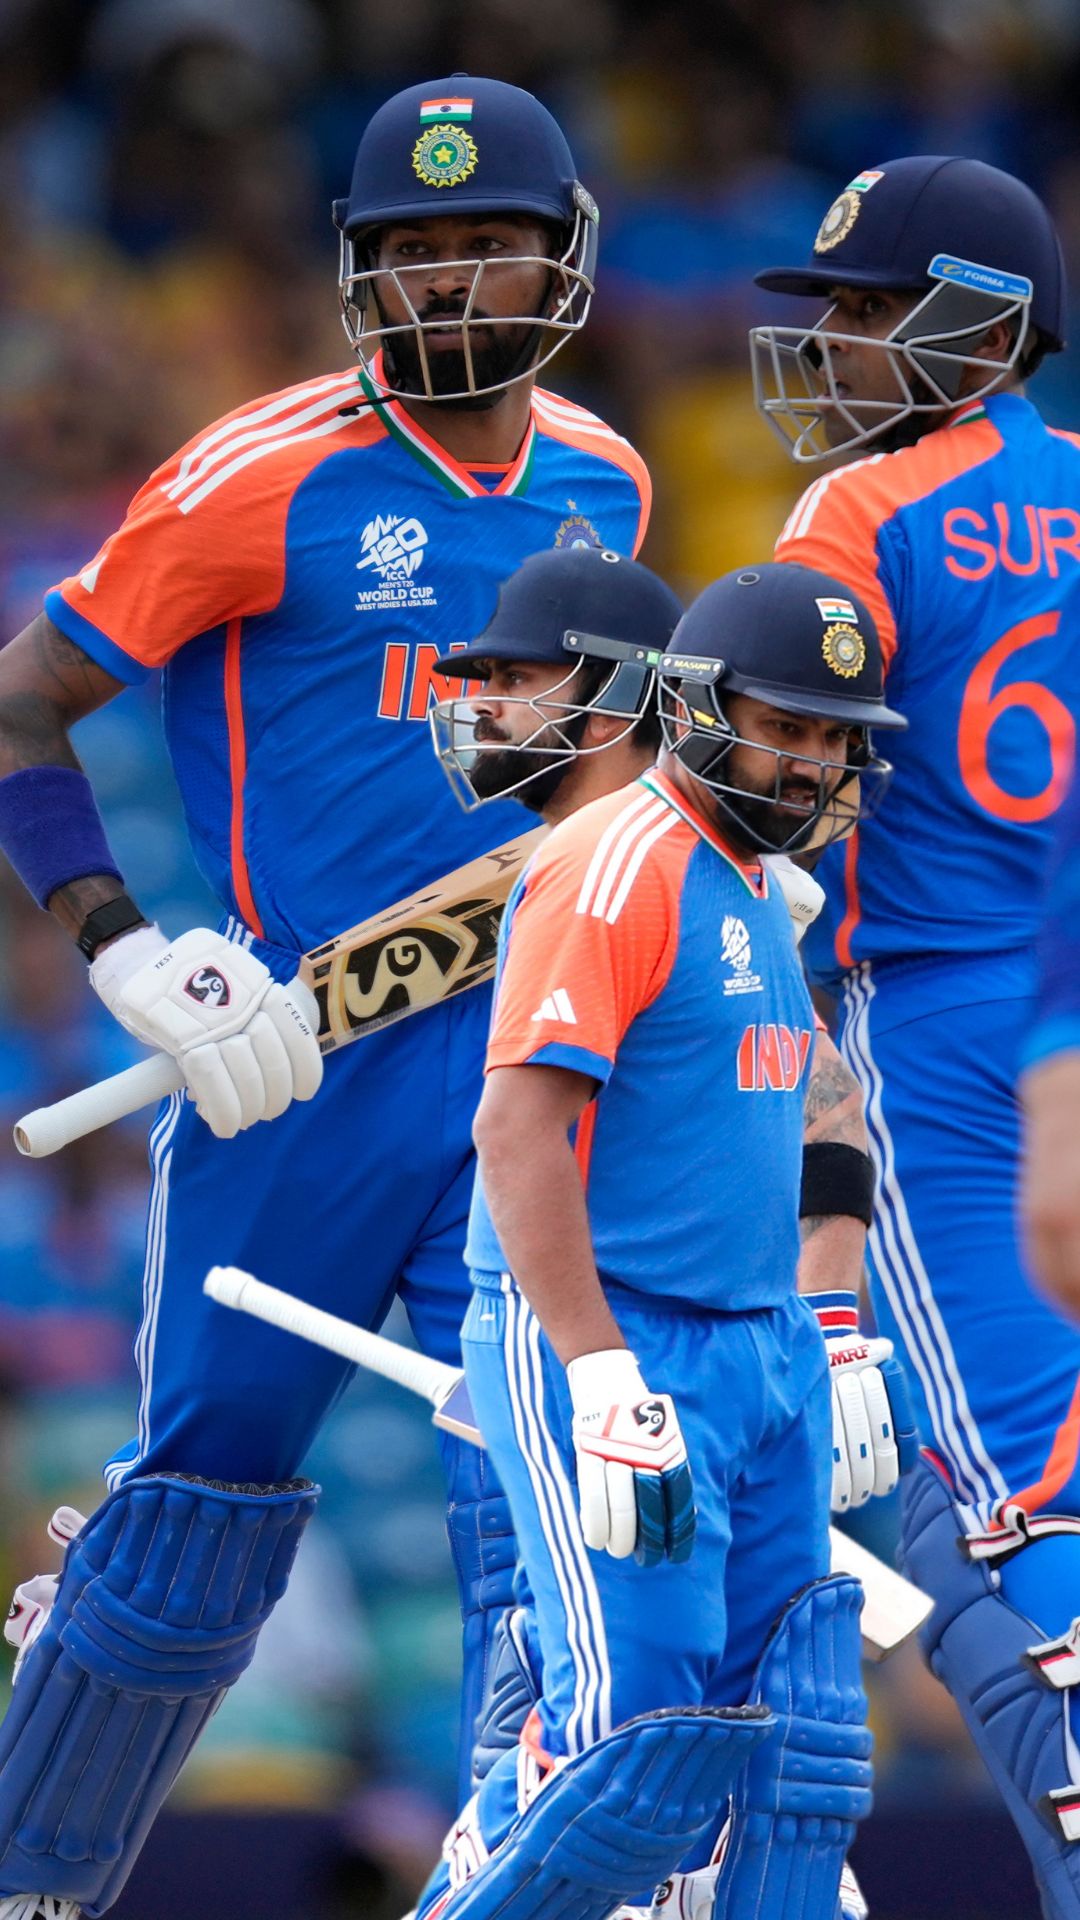 Rohit-Kohli rested, no Hardik and Surya: India's predicted squad for Zimbabwe T20 series